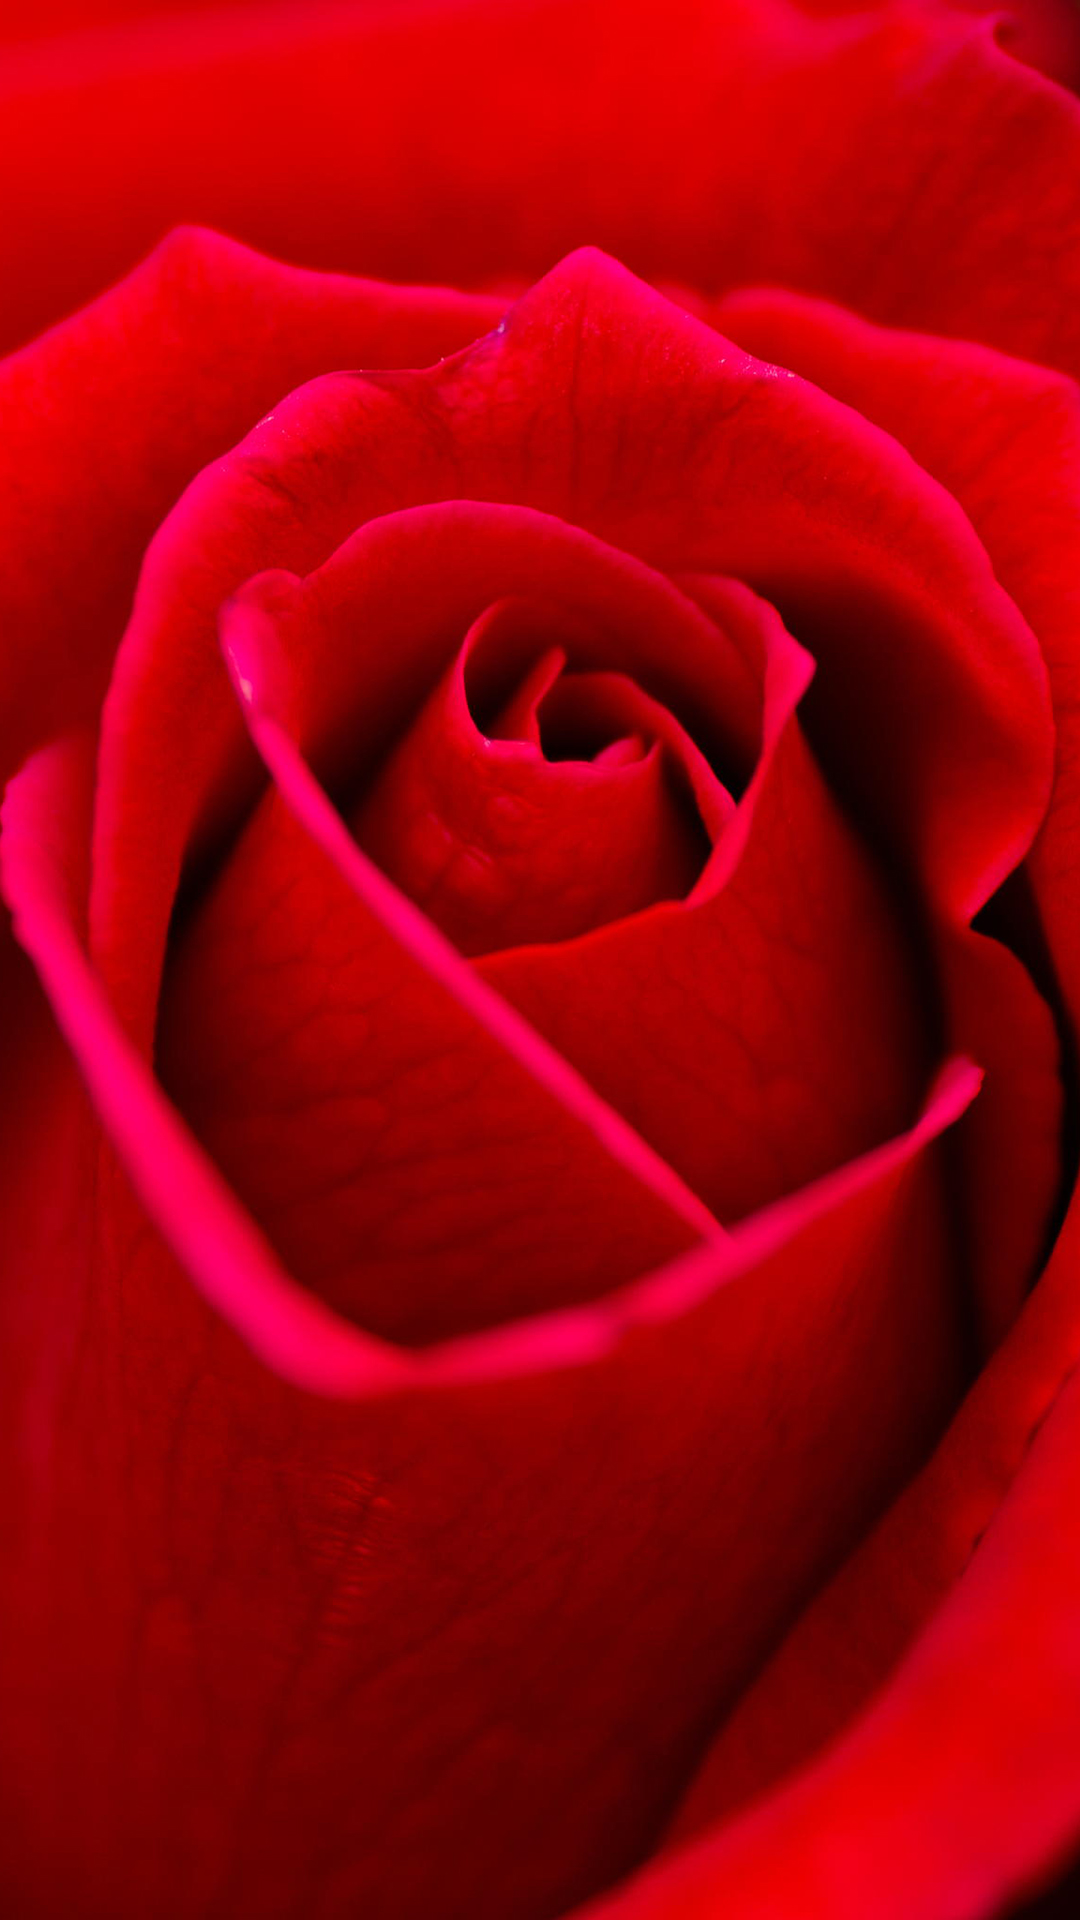 red rose wallpaper,rose,garden roses,red,petal,flower